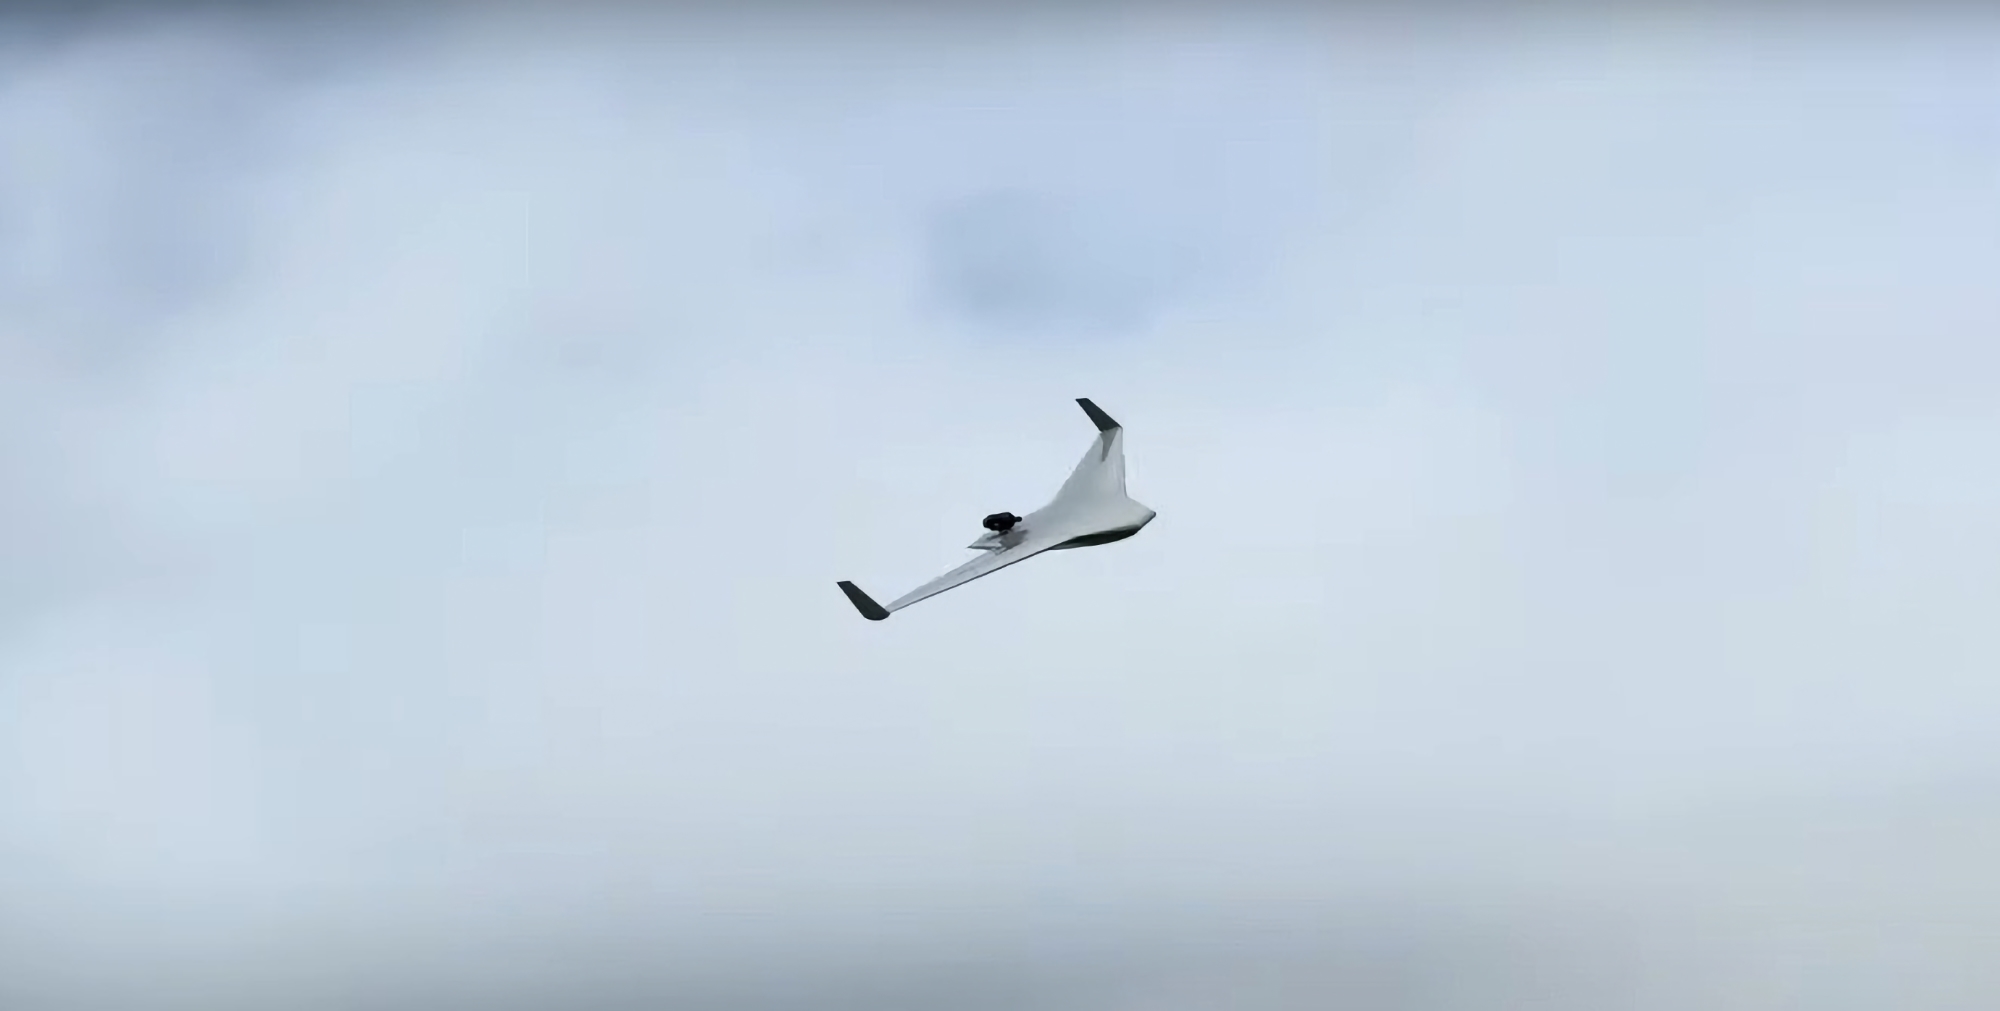 EOS Technologie ha presentado el Veloce 330: un UAV propulsado a reacción con tecnología de despegue y aterrizaje vertical que puede alcanzar velocidades de hasta 400 km/h.